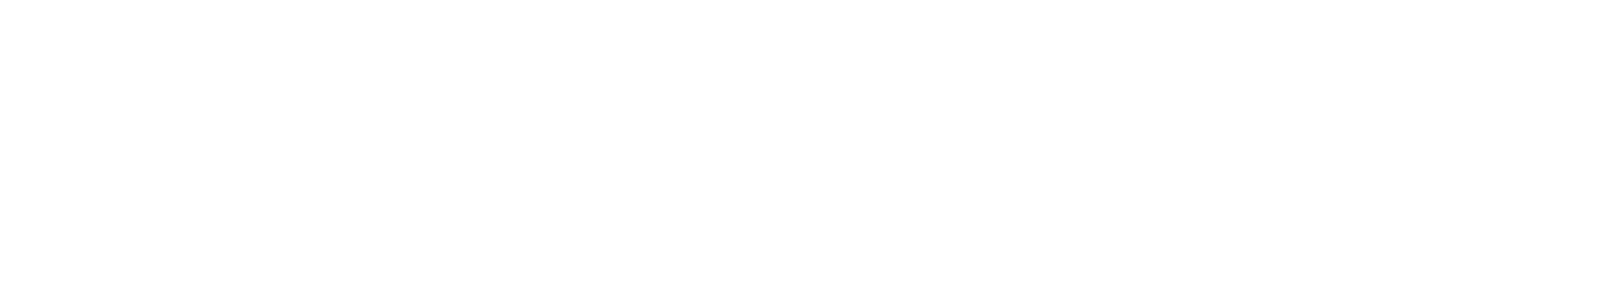 Aviva logo grand pour les fonds sombres (PNG transparent)